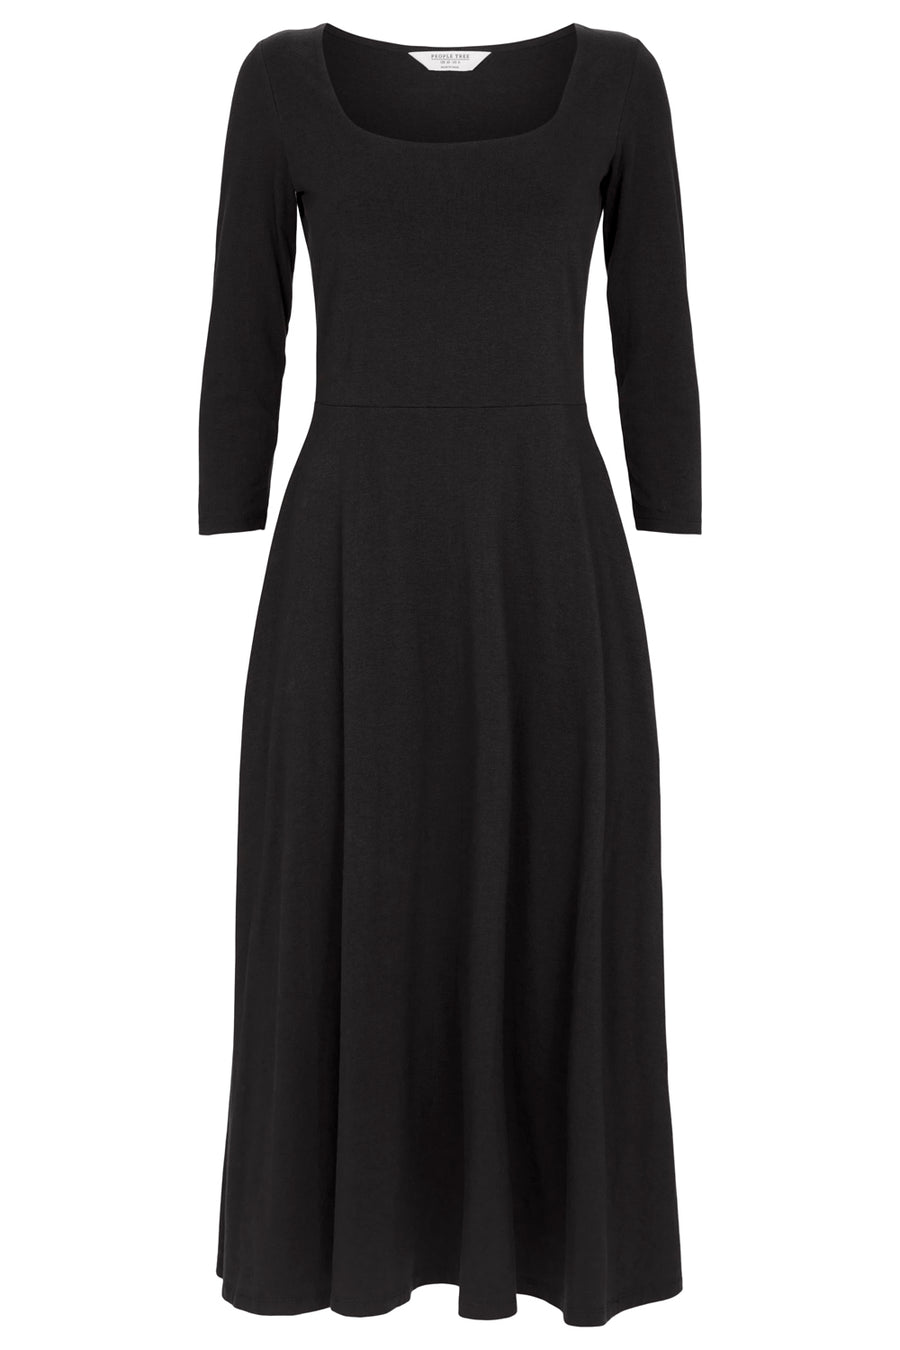 Valencia Dress in Black XS, S